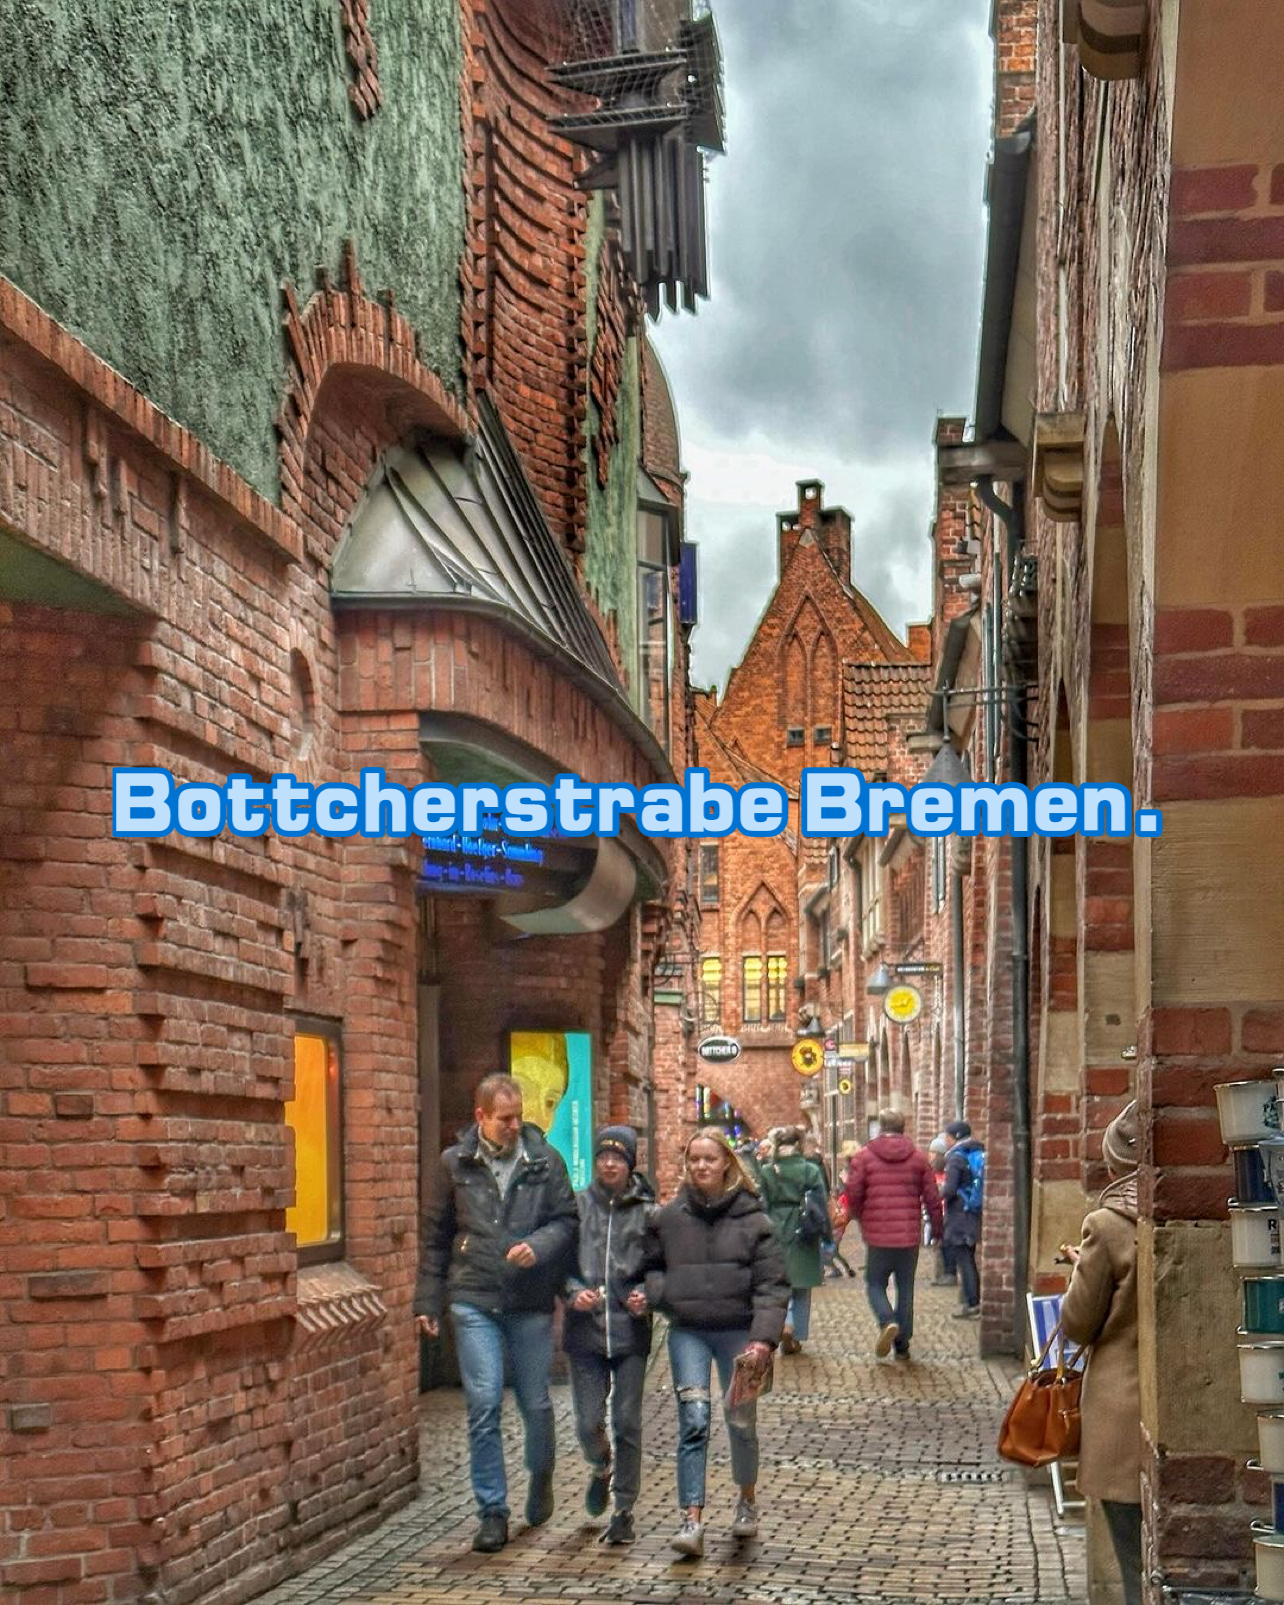 Bottcherstrabe Bremen.